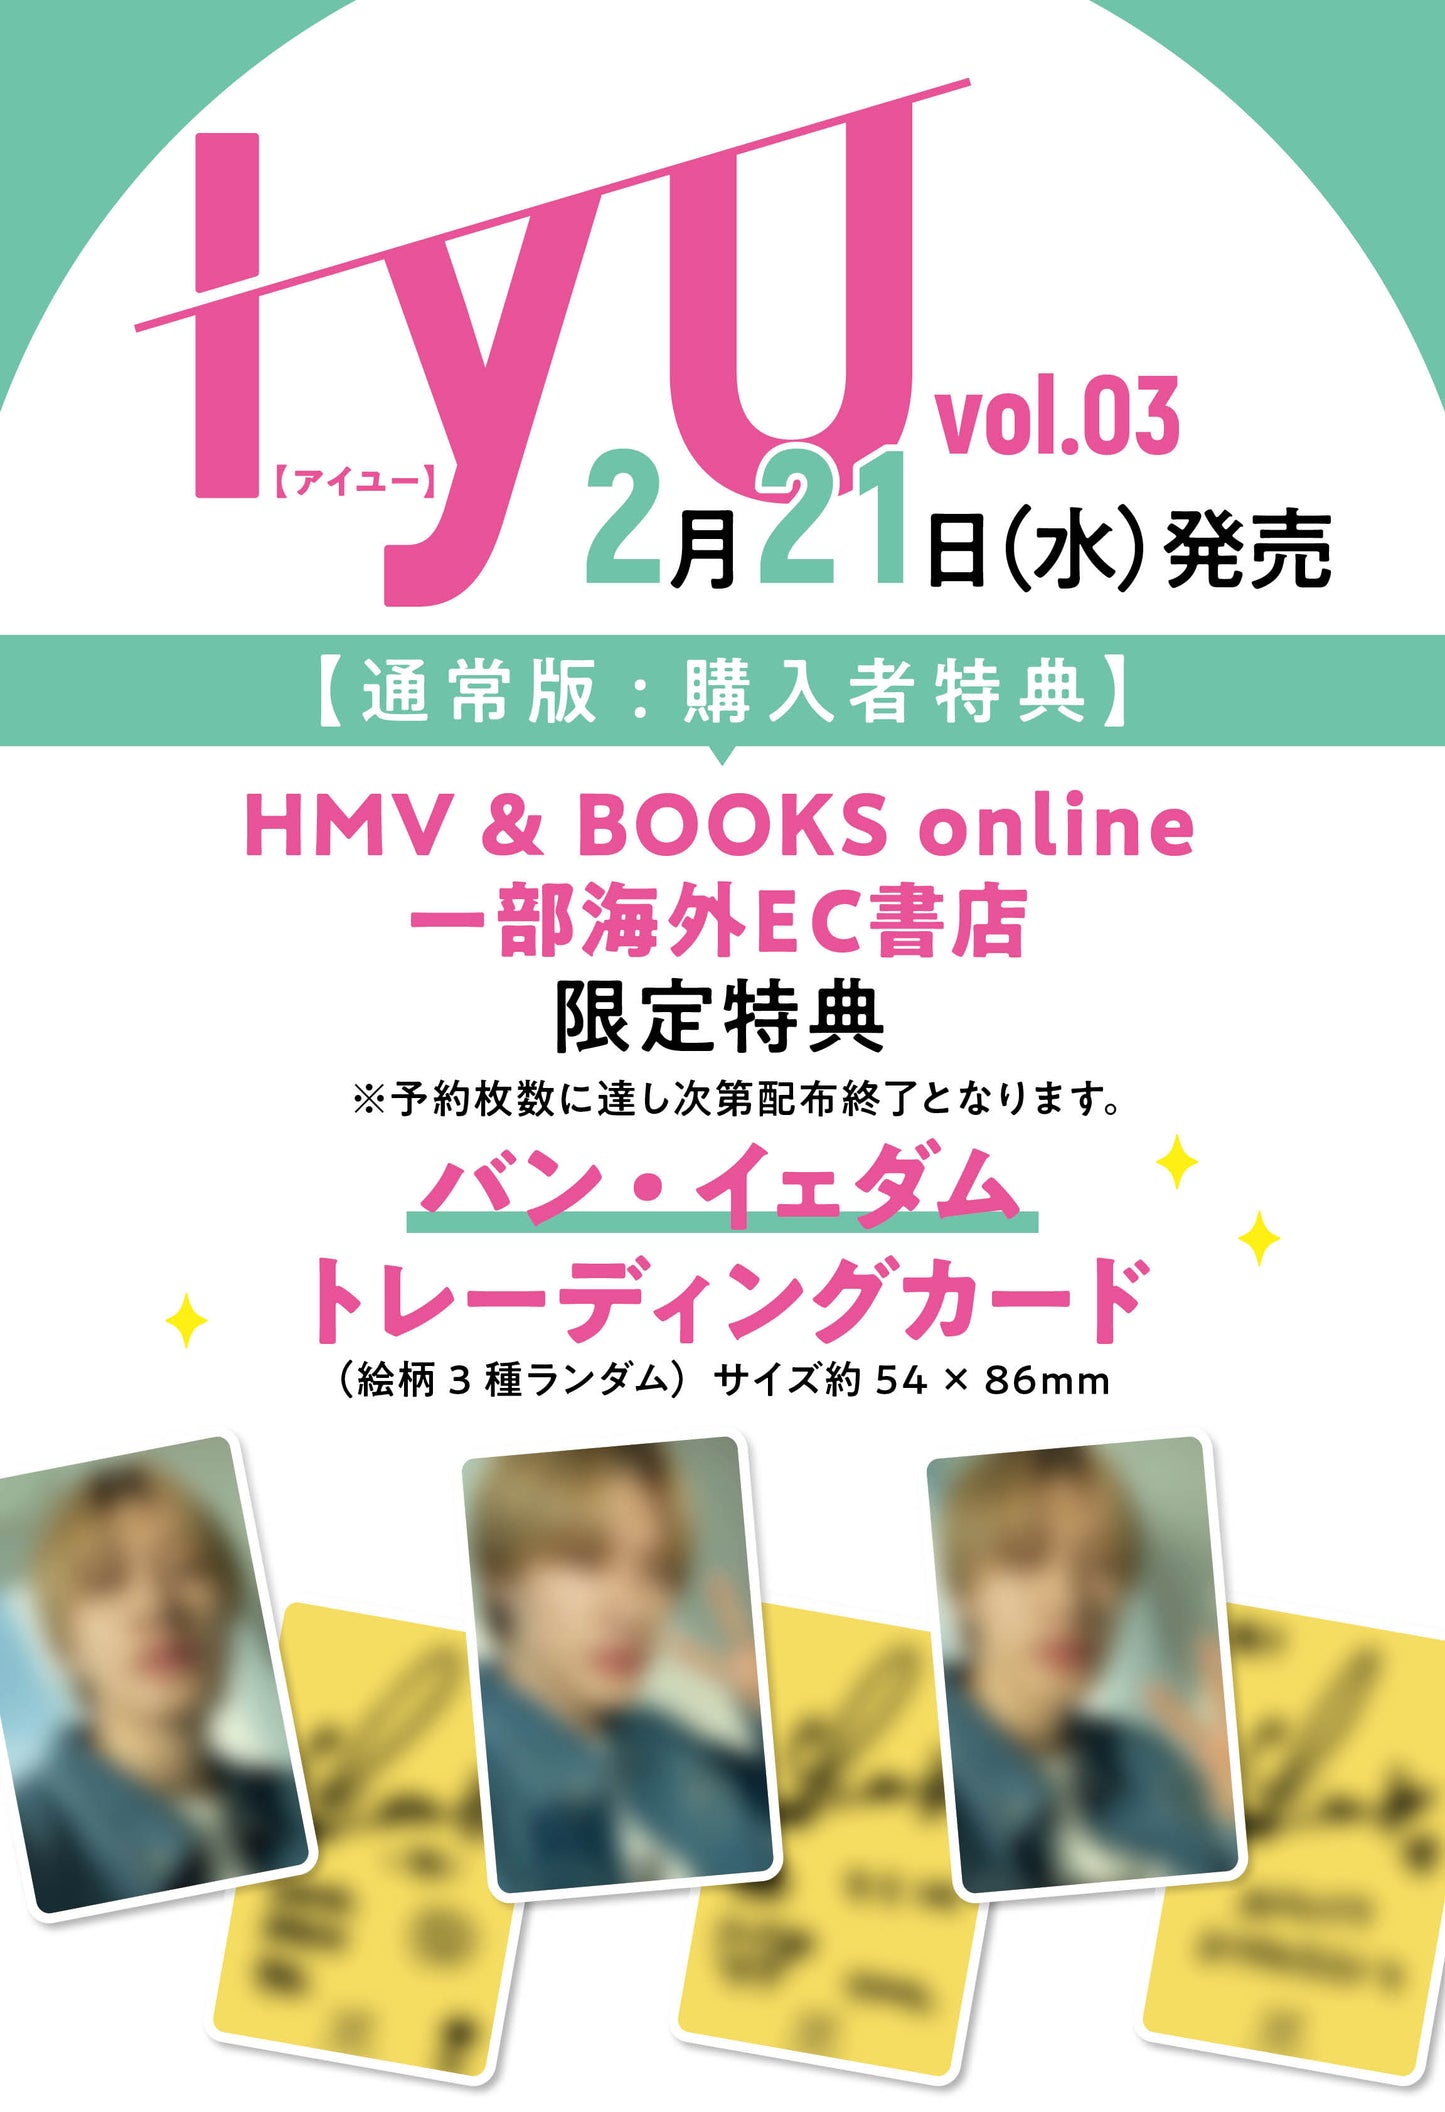 【バン・イェダムトレーディングカード付】IYU（アイユー）vol.03 【Includes Trading card of "Bang Ye Dam"】IYU vol.03